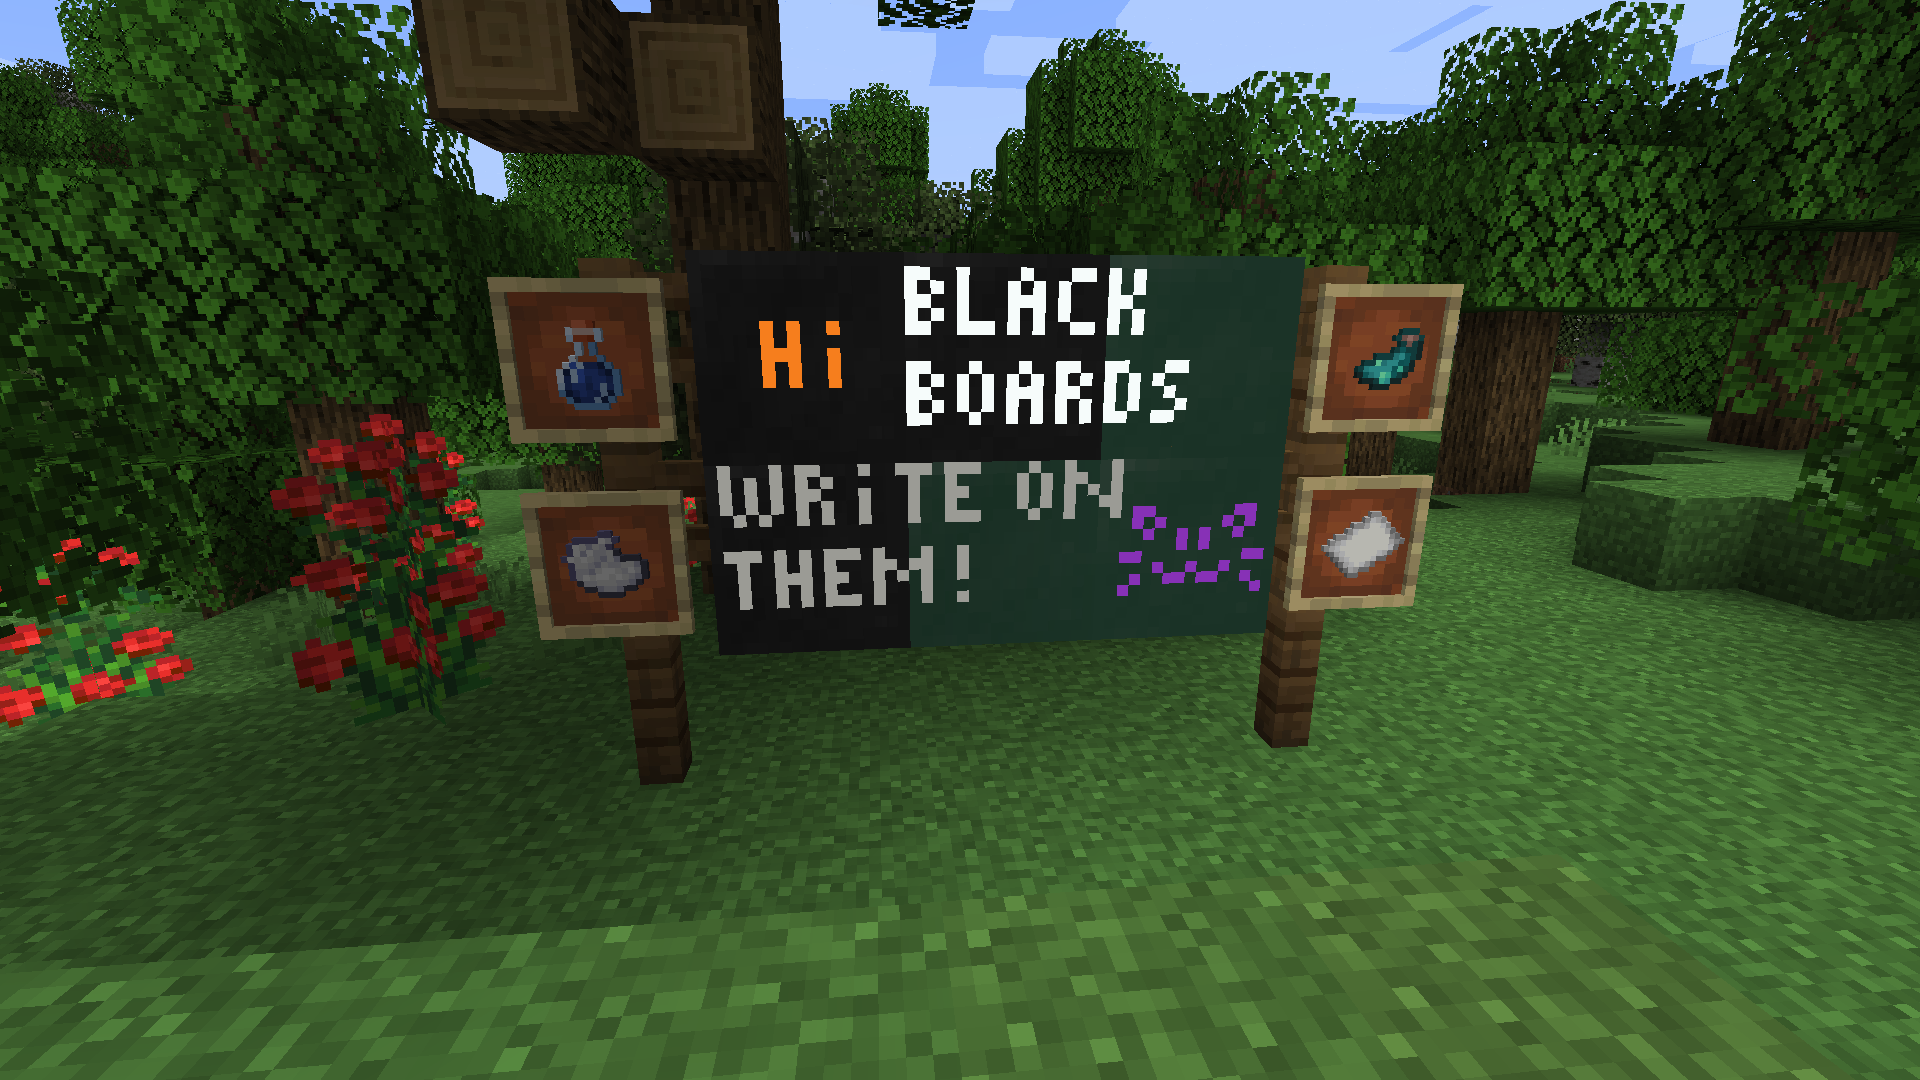 Blackboards!